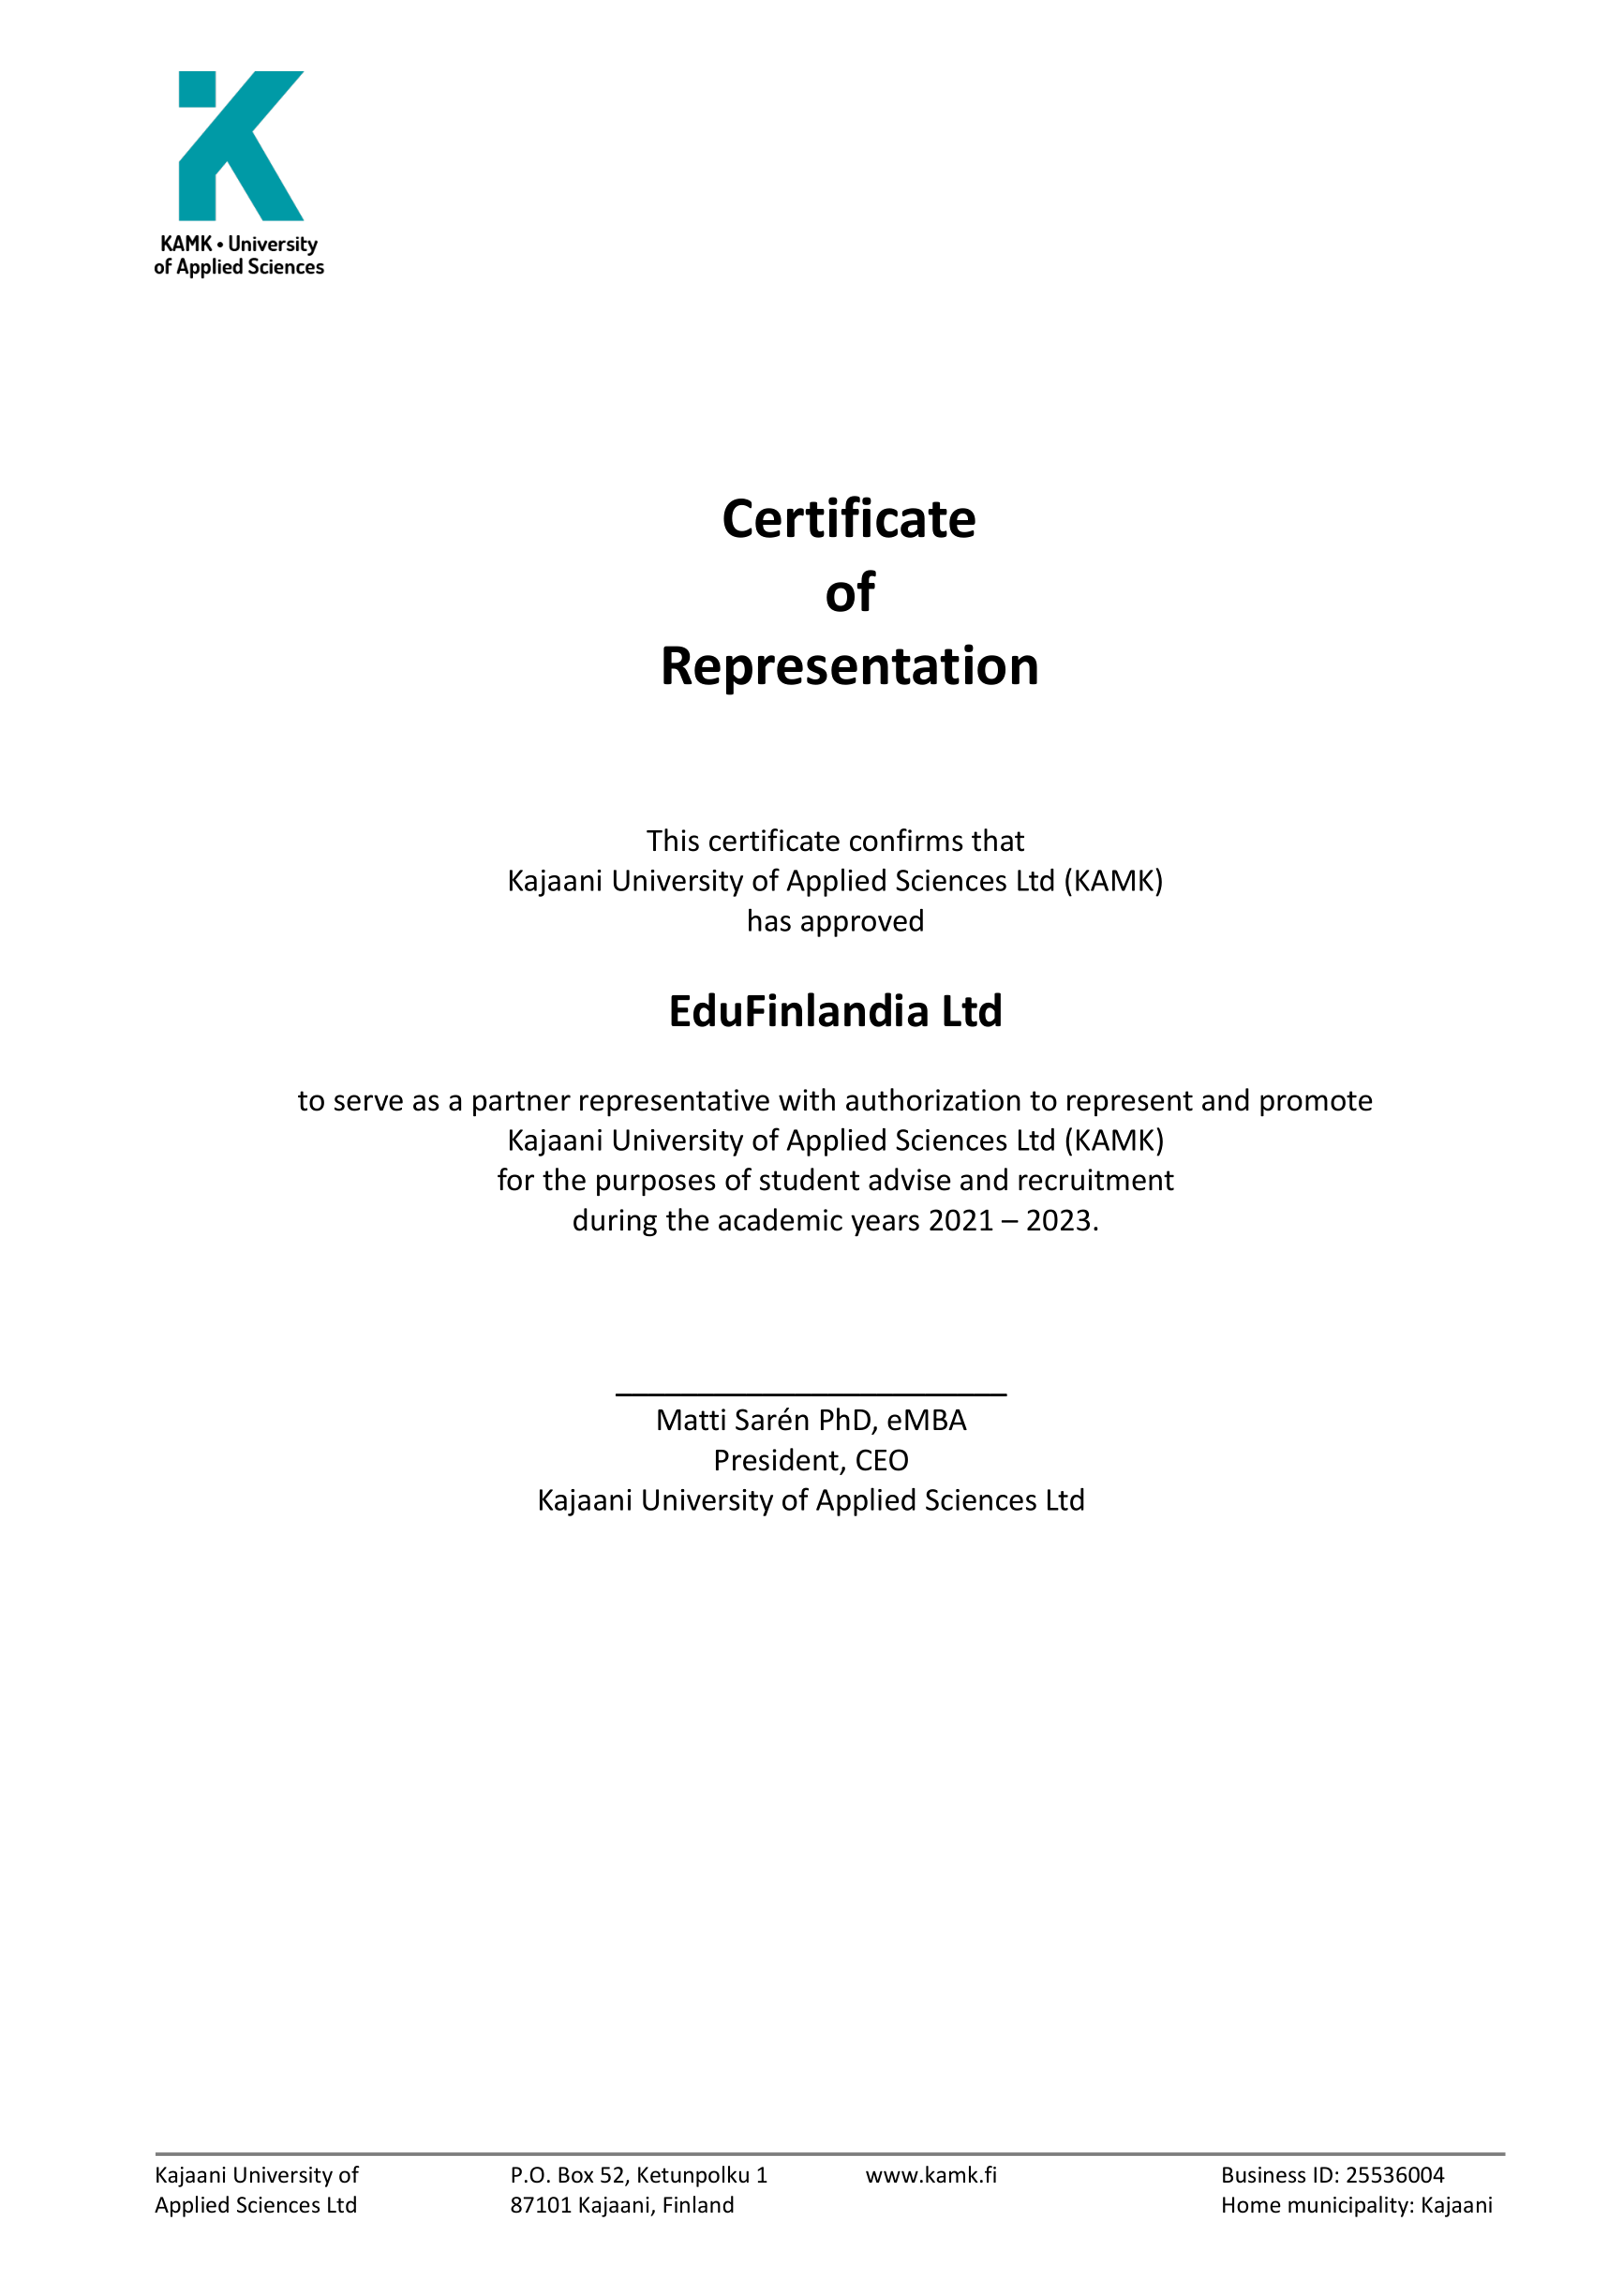 Certificate of Authorisation EduFinlandia(2)